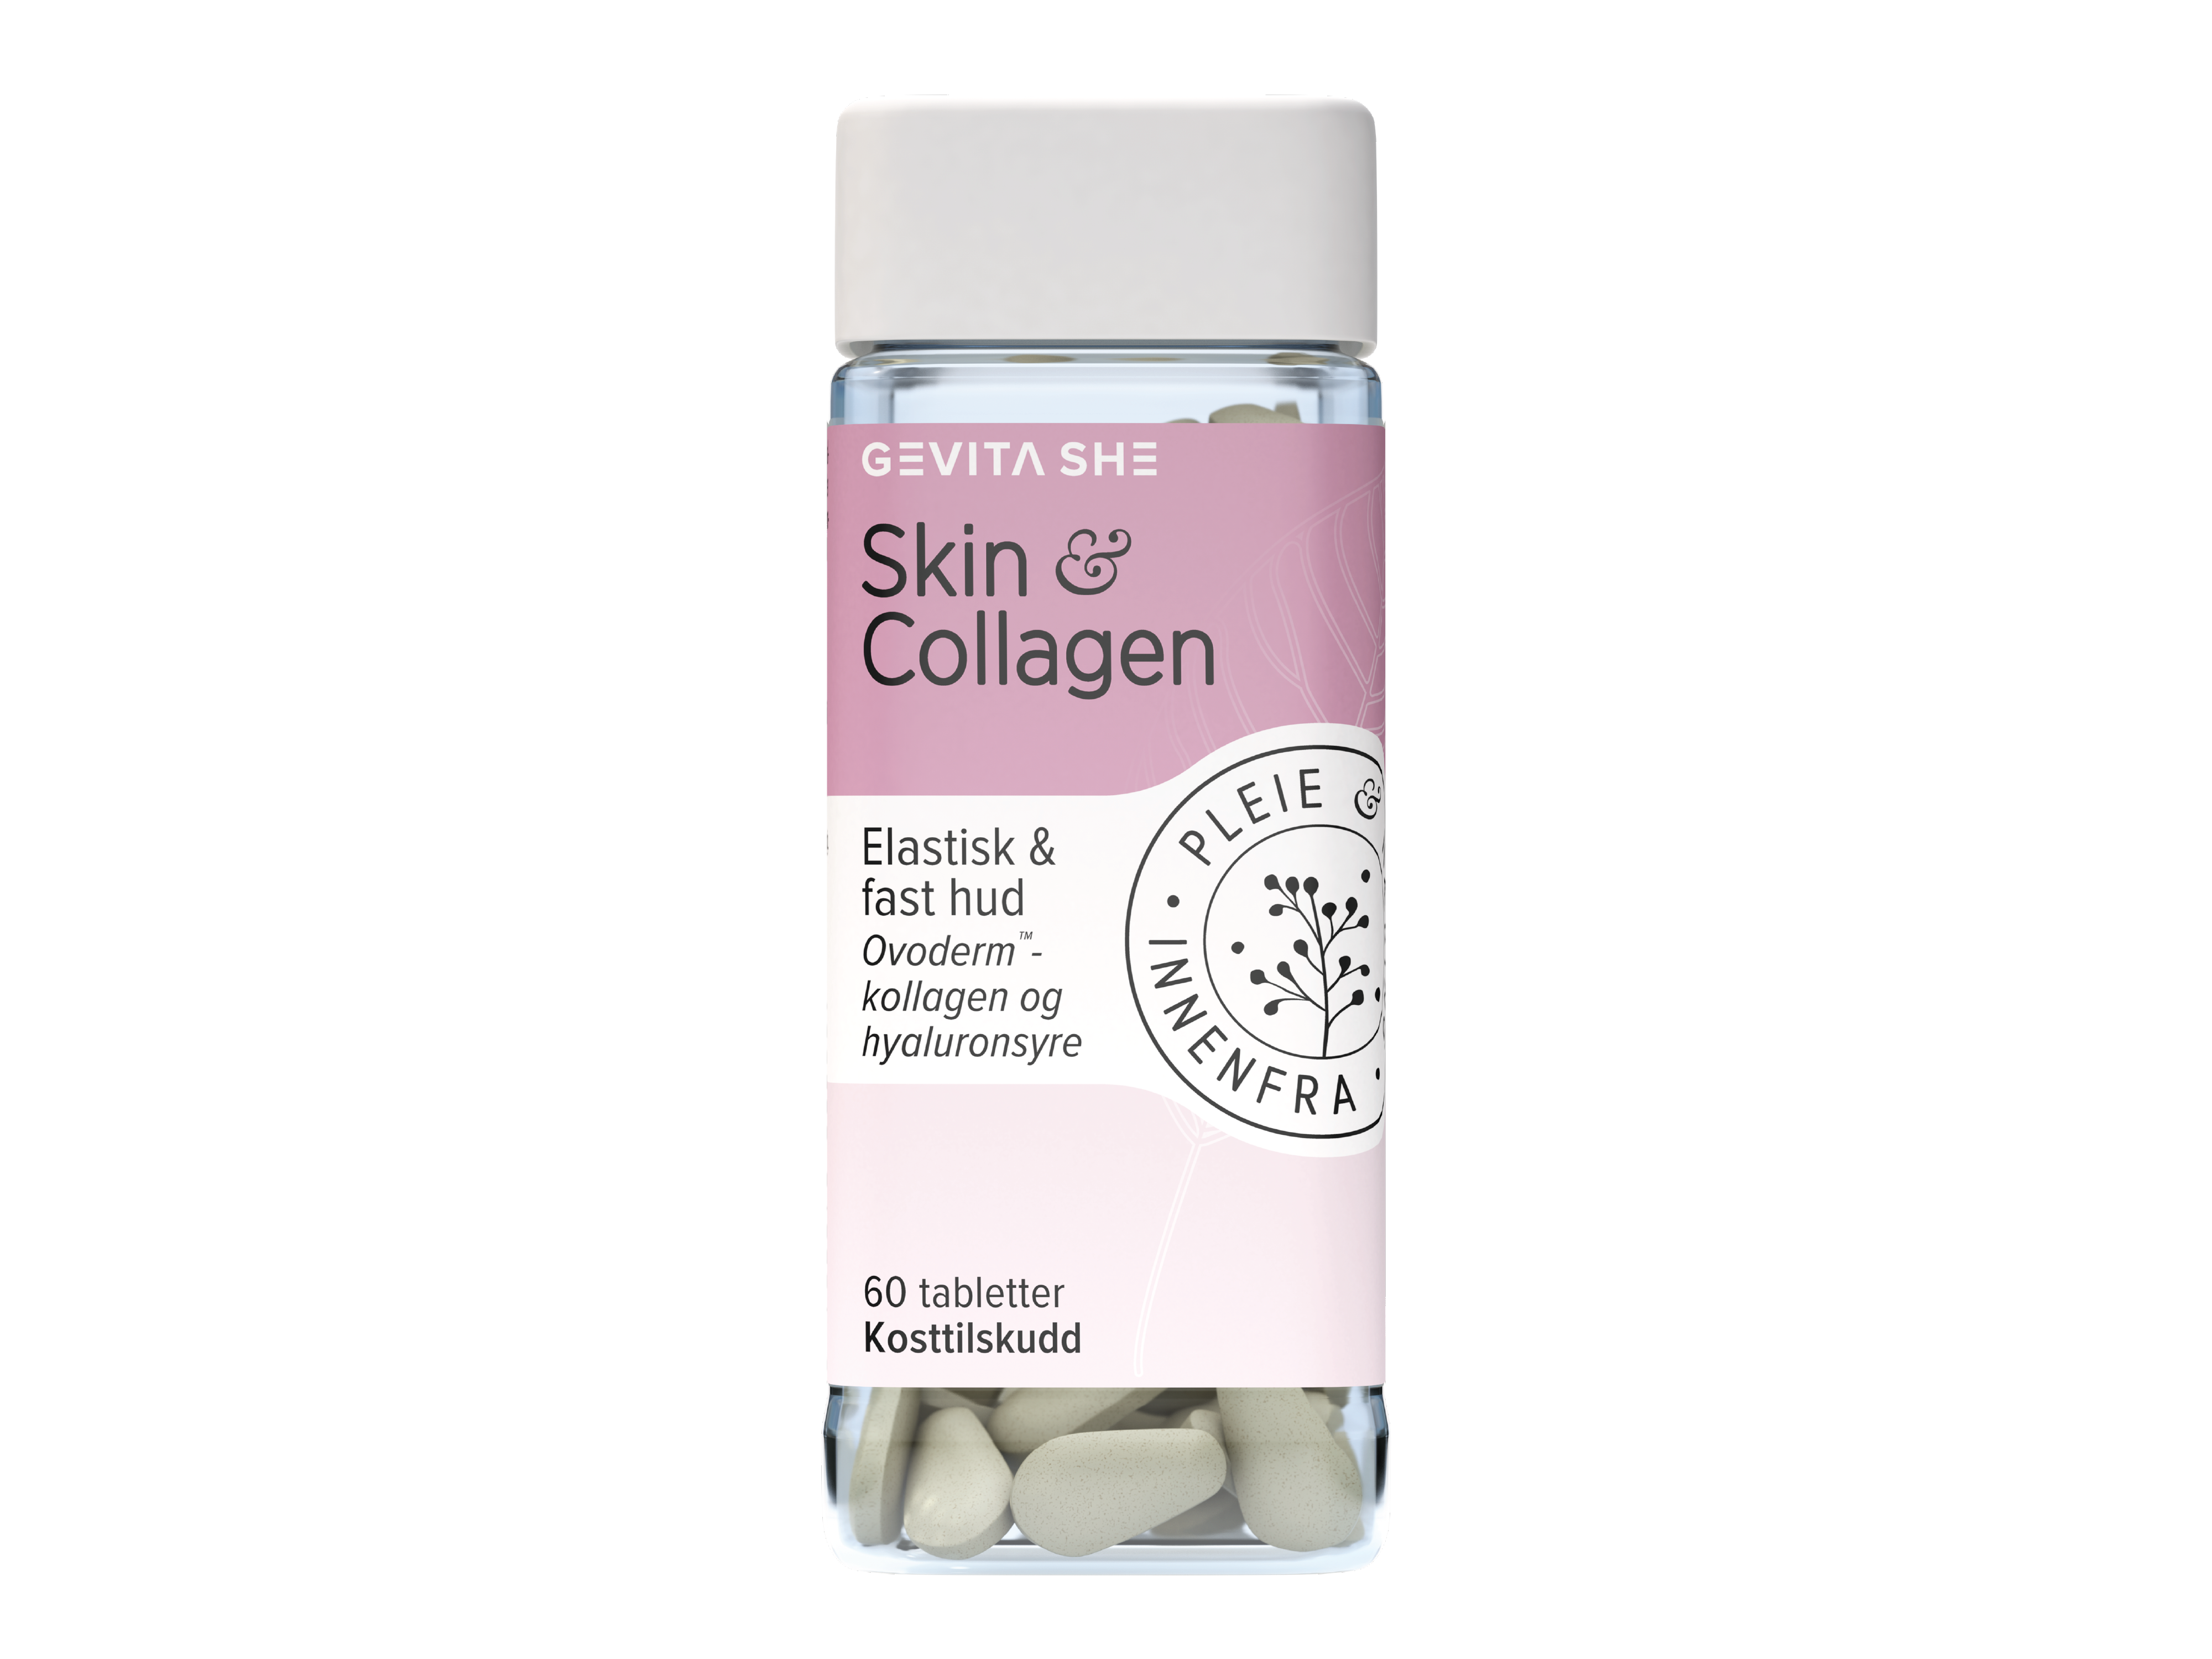 Gevita SHE Skin & Collagen, 60 tabletter